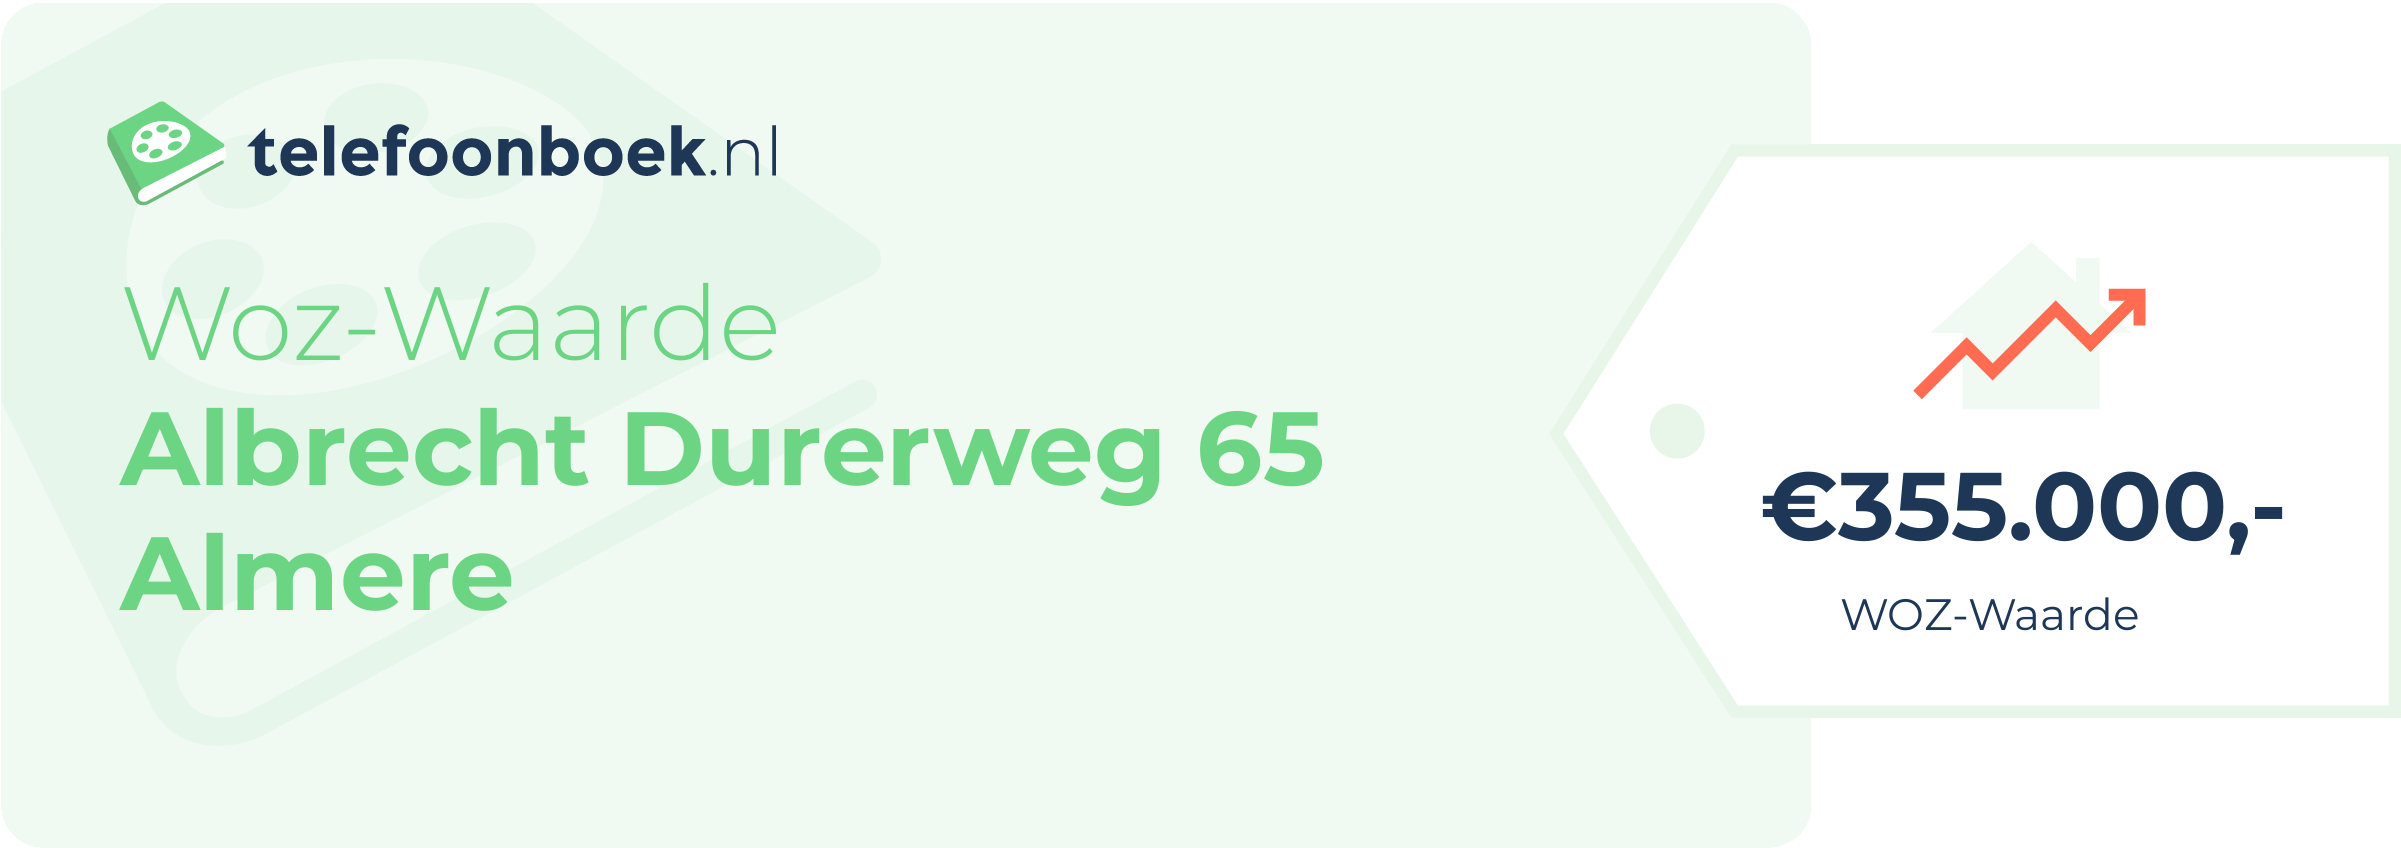 WOZ-waarde Albrecht Durerweg 65 Almere